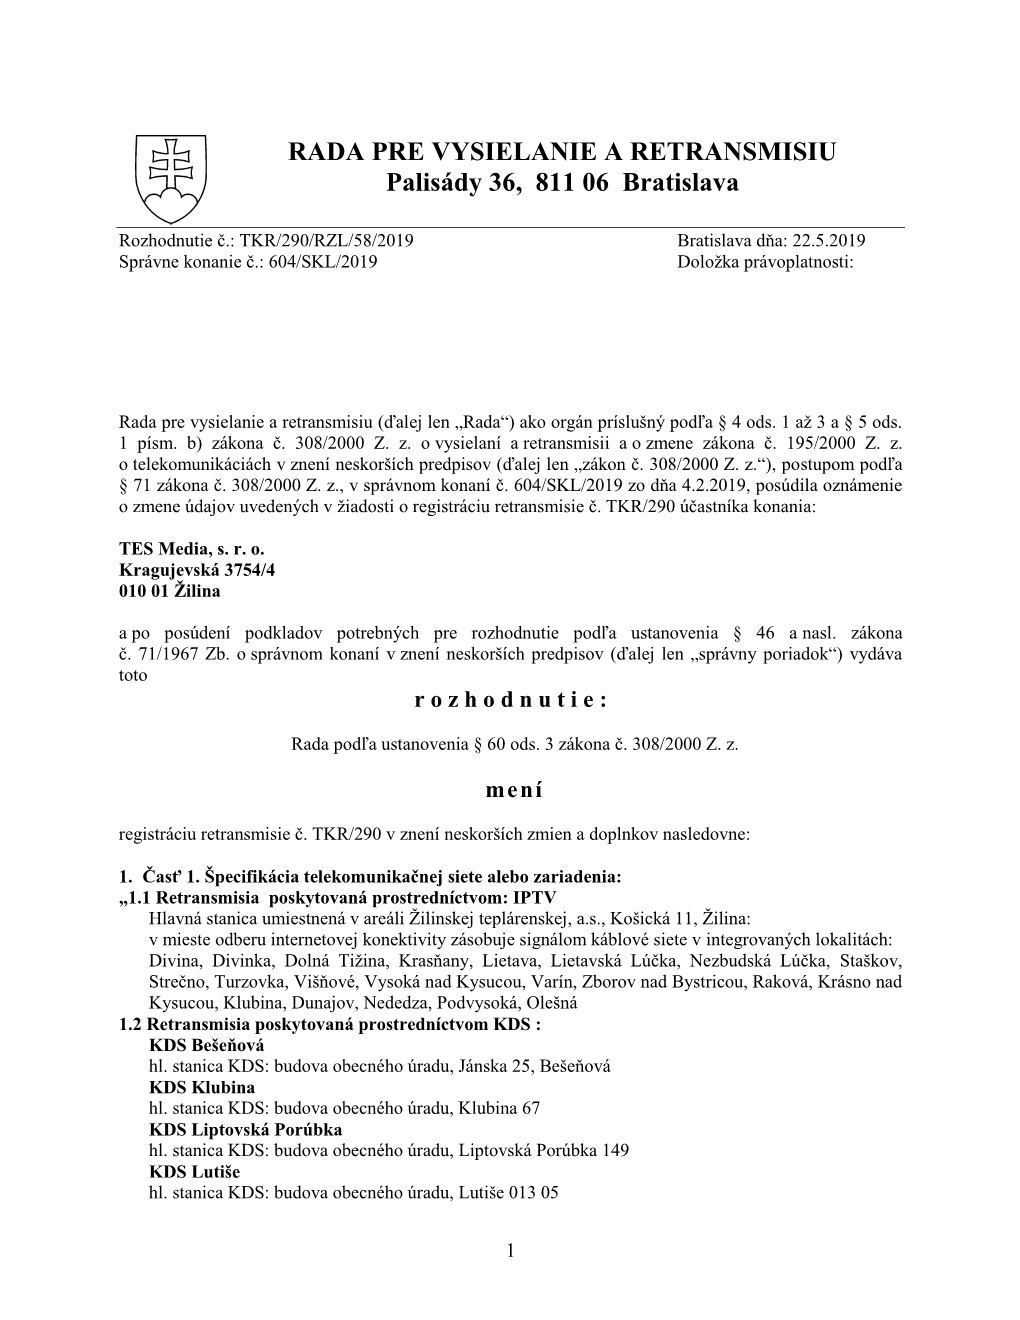 TKR/290/RZL/58/2019 Bratislava Dňa: 22.5.2019 Správne Konanie Č.: 604/SKL/2019 Doložka Právoplatnosti